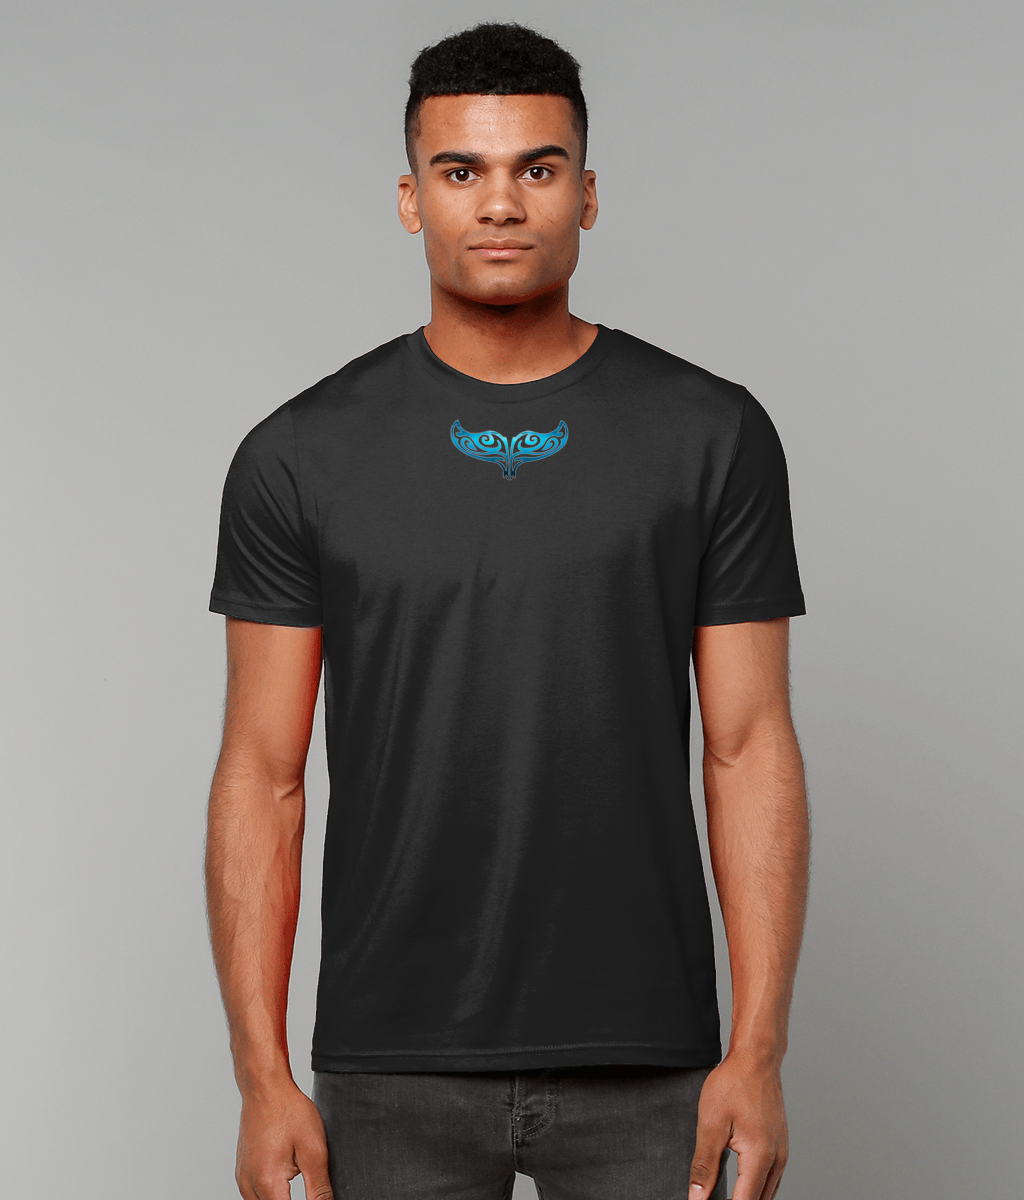 Underwave whaletail t-shirt